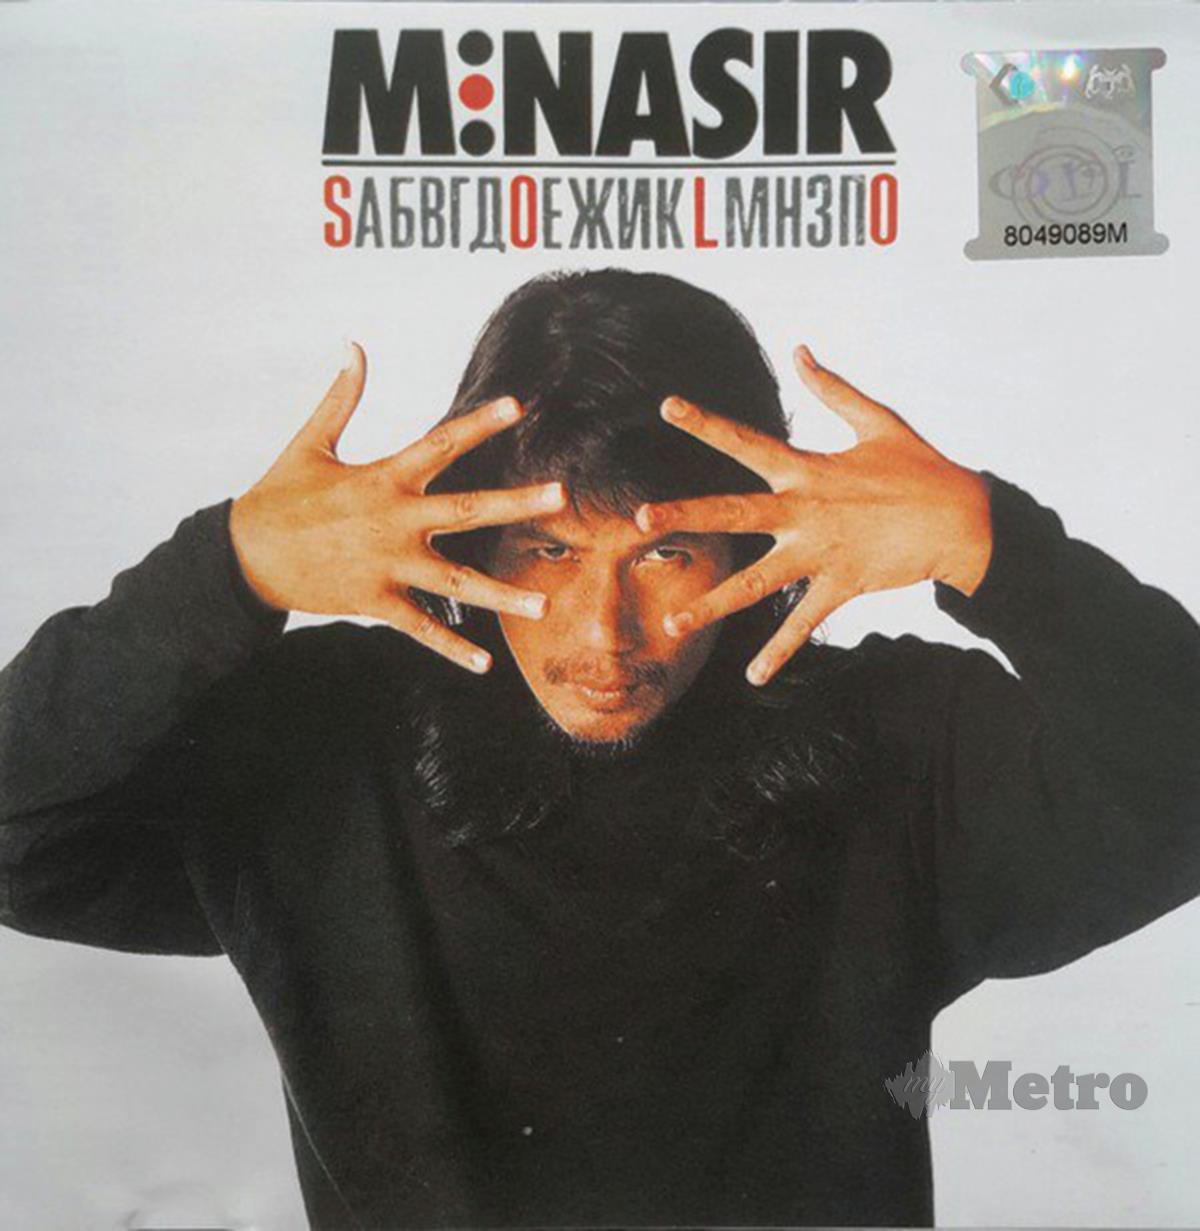 S.O.L.O antara album yang terbaik pernah dihasilkan M Nasir.